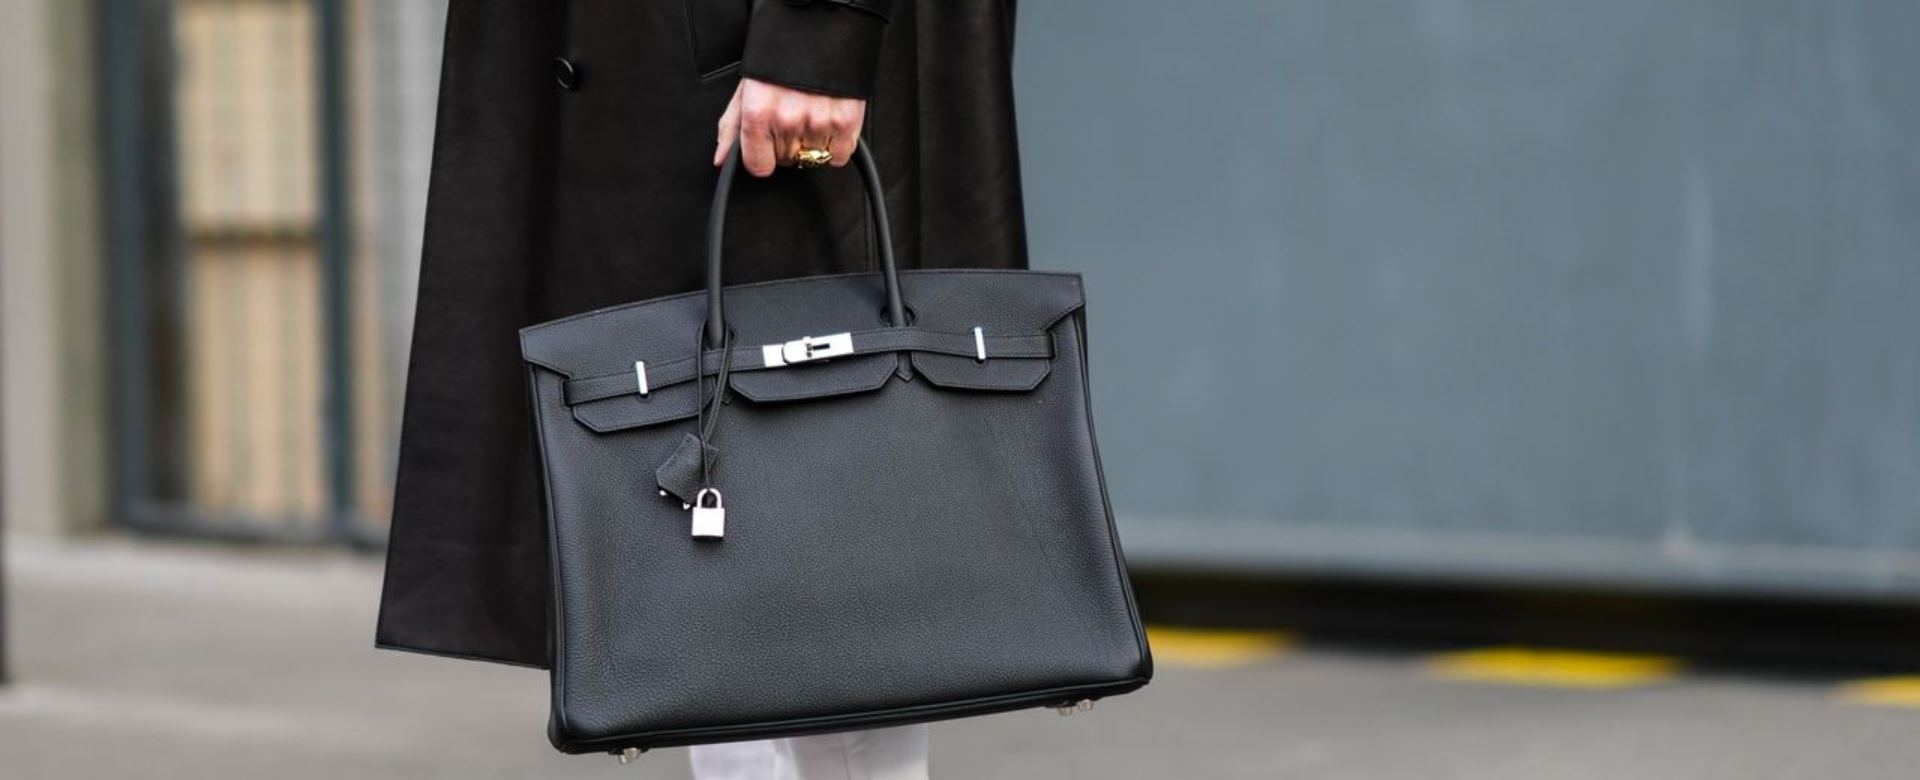 Doanh thu của Hermès tăng trưởng kỷ lục